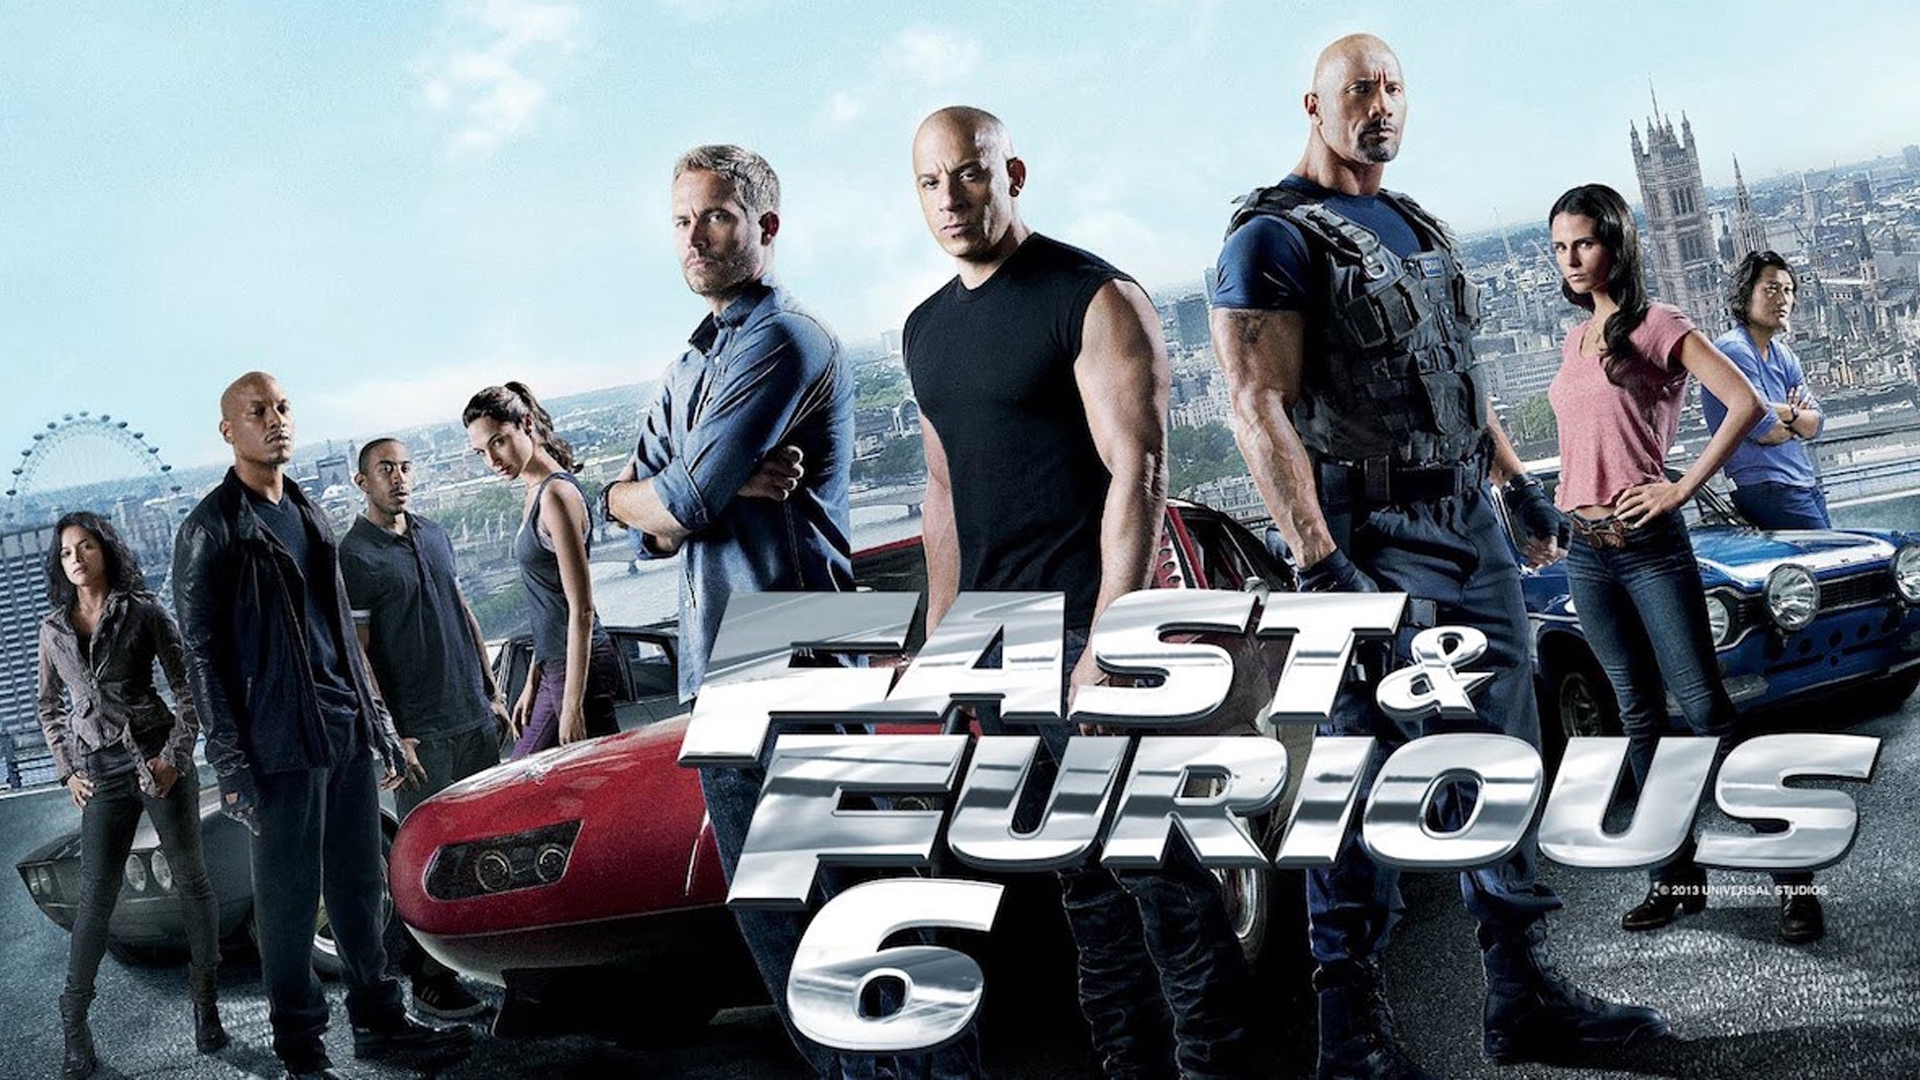 Ласто фаст. Форсаж 6 (2013) Furious 6. Форсаж 6 fast & Furious 6 2013 Постер. Форсаж 6 2013 Постер.